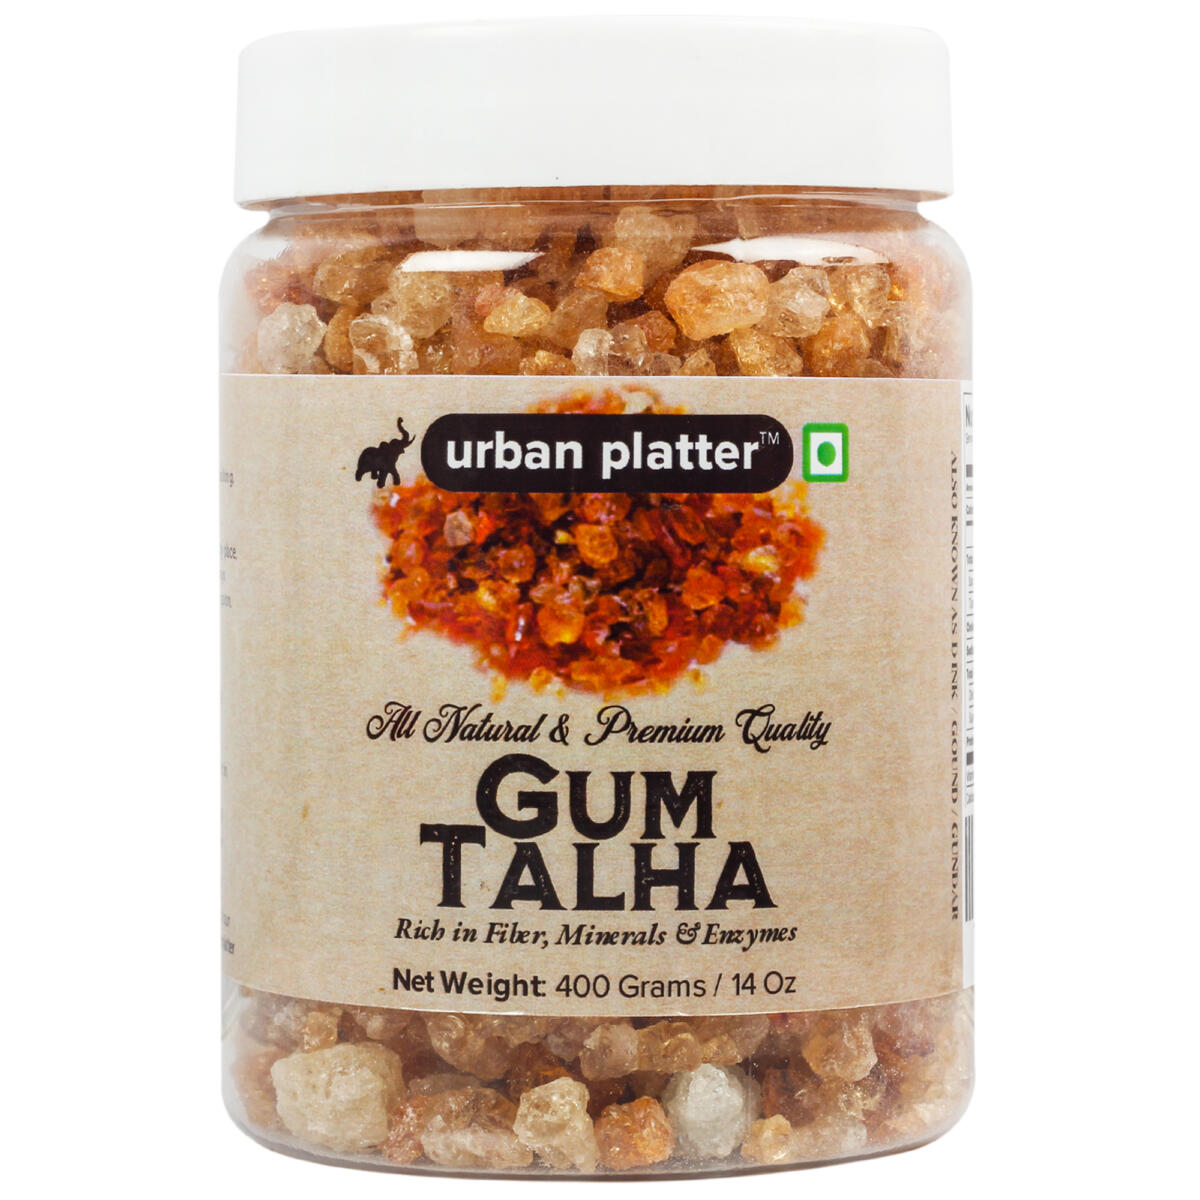 Urban Platter Gum Talha (Dink/Gound), 400g / 14oz [Rich in Fiber, Mineral & Enzymes] Baking Urban Platter